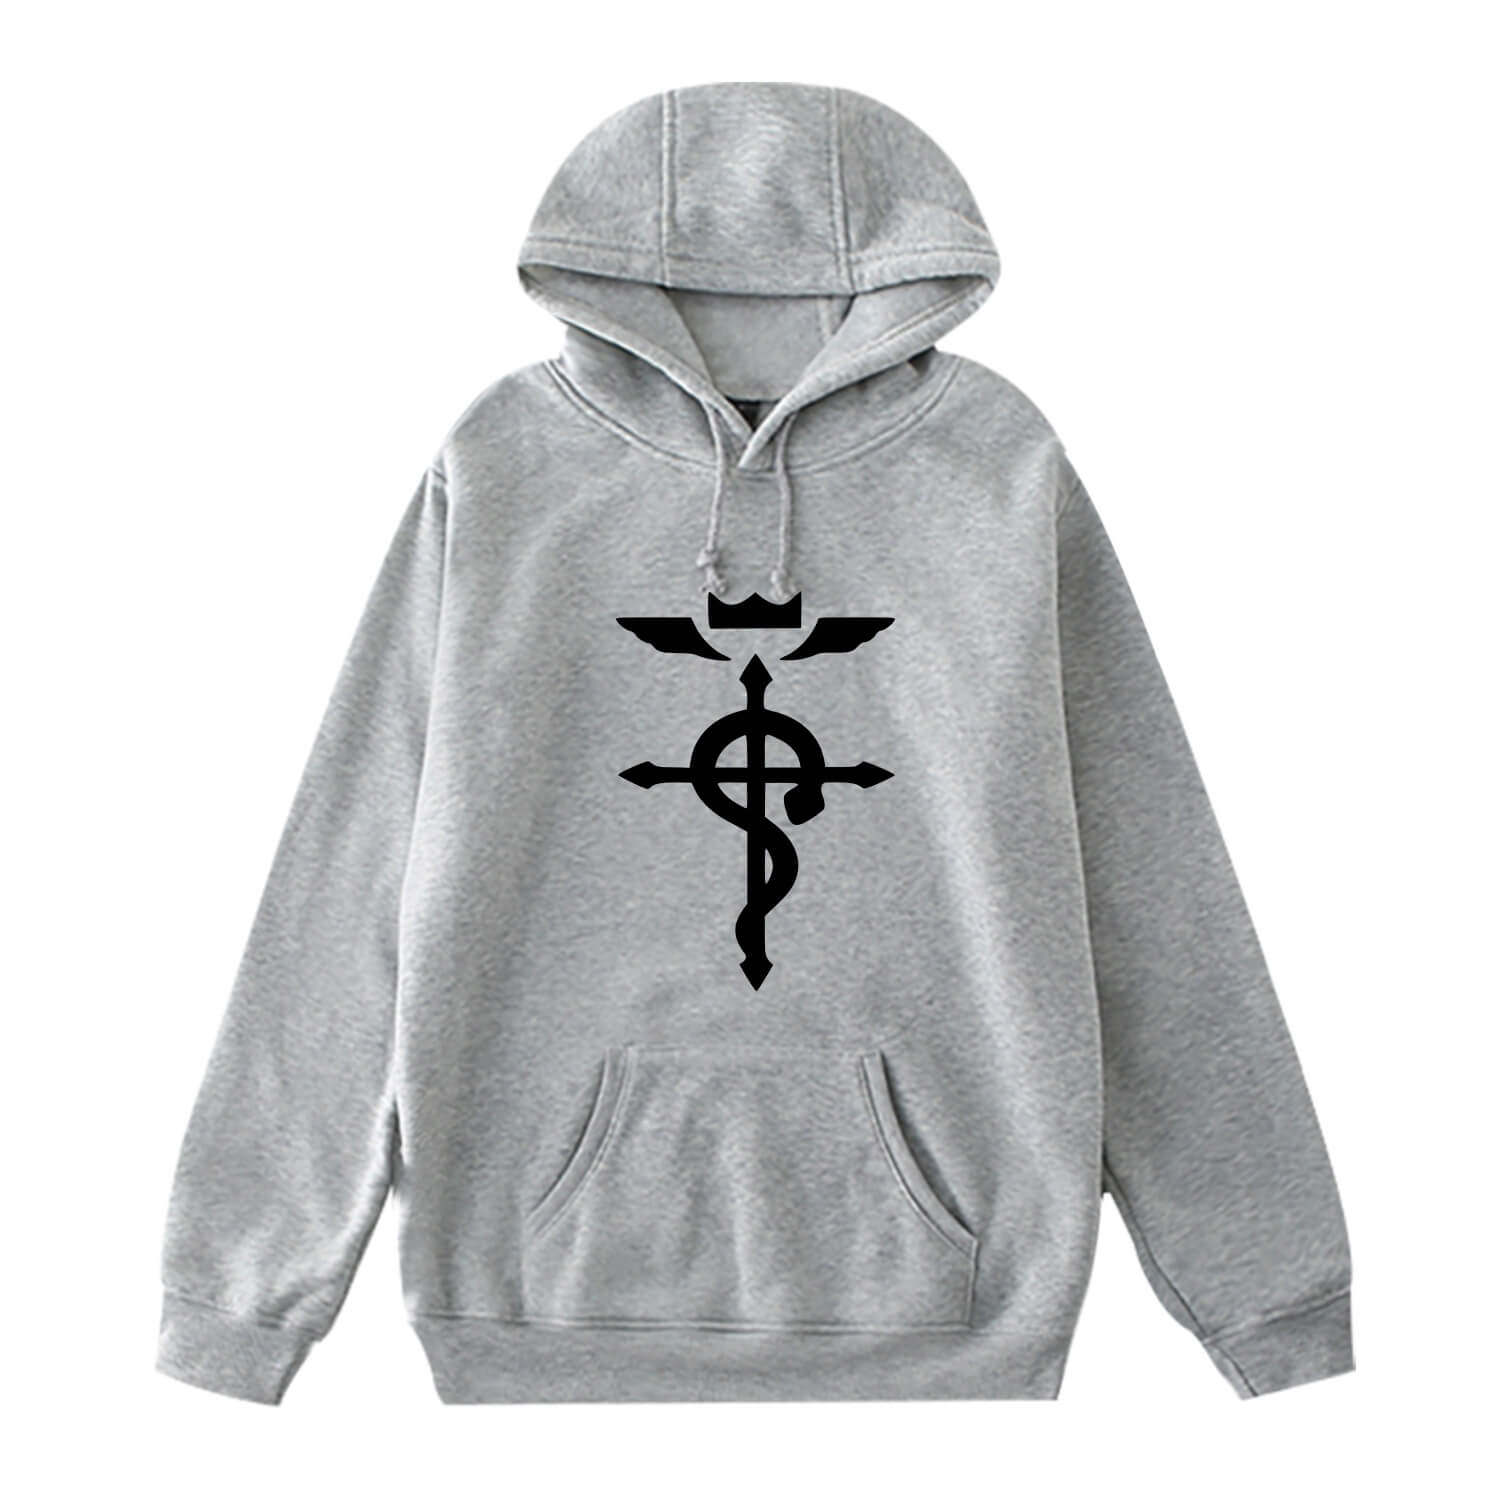 Fullmetal Alchemist long sleeves hoodie 6 colors